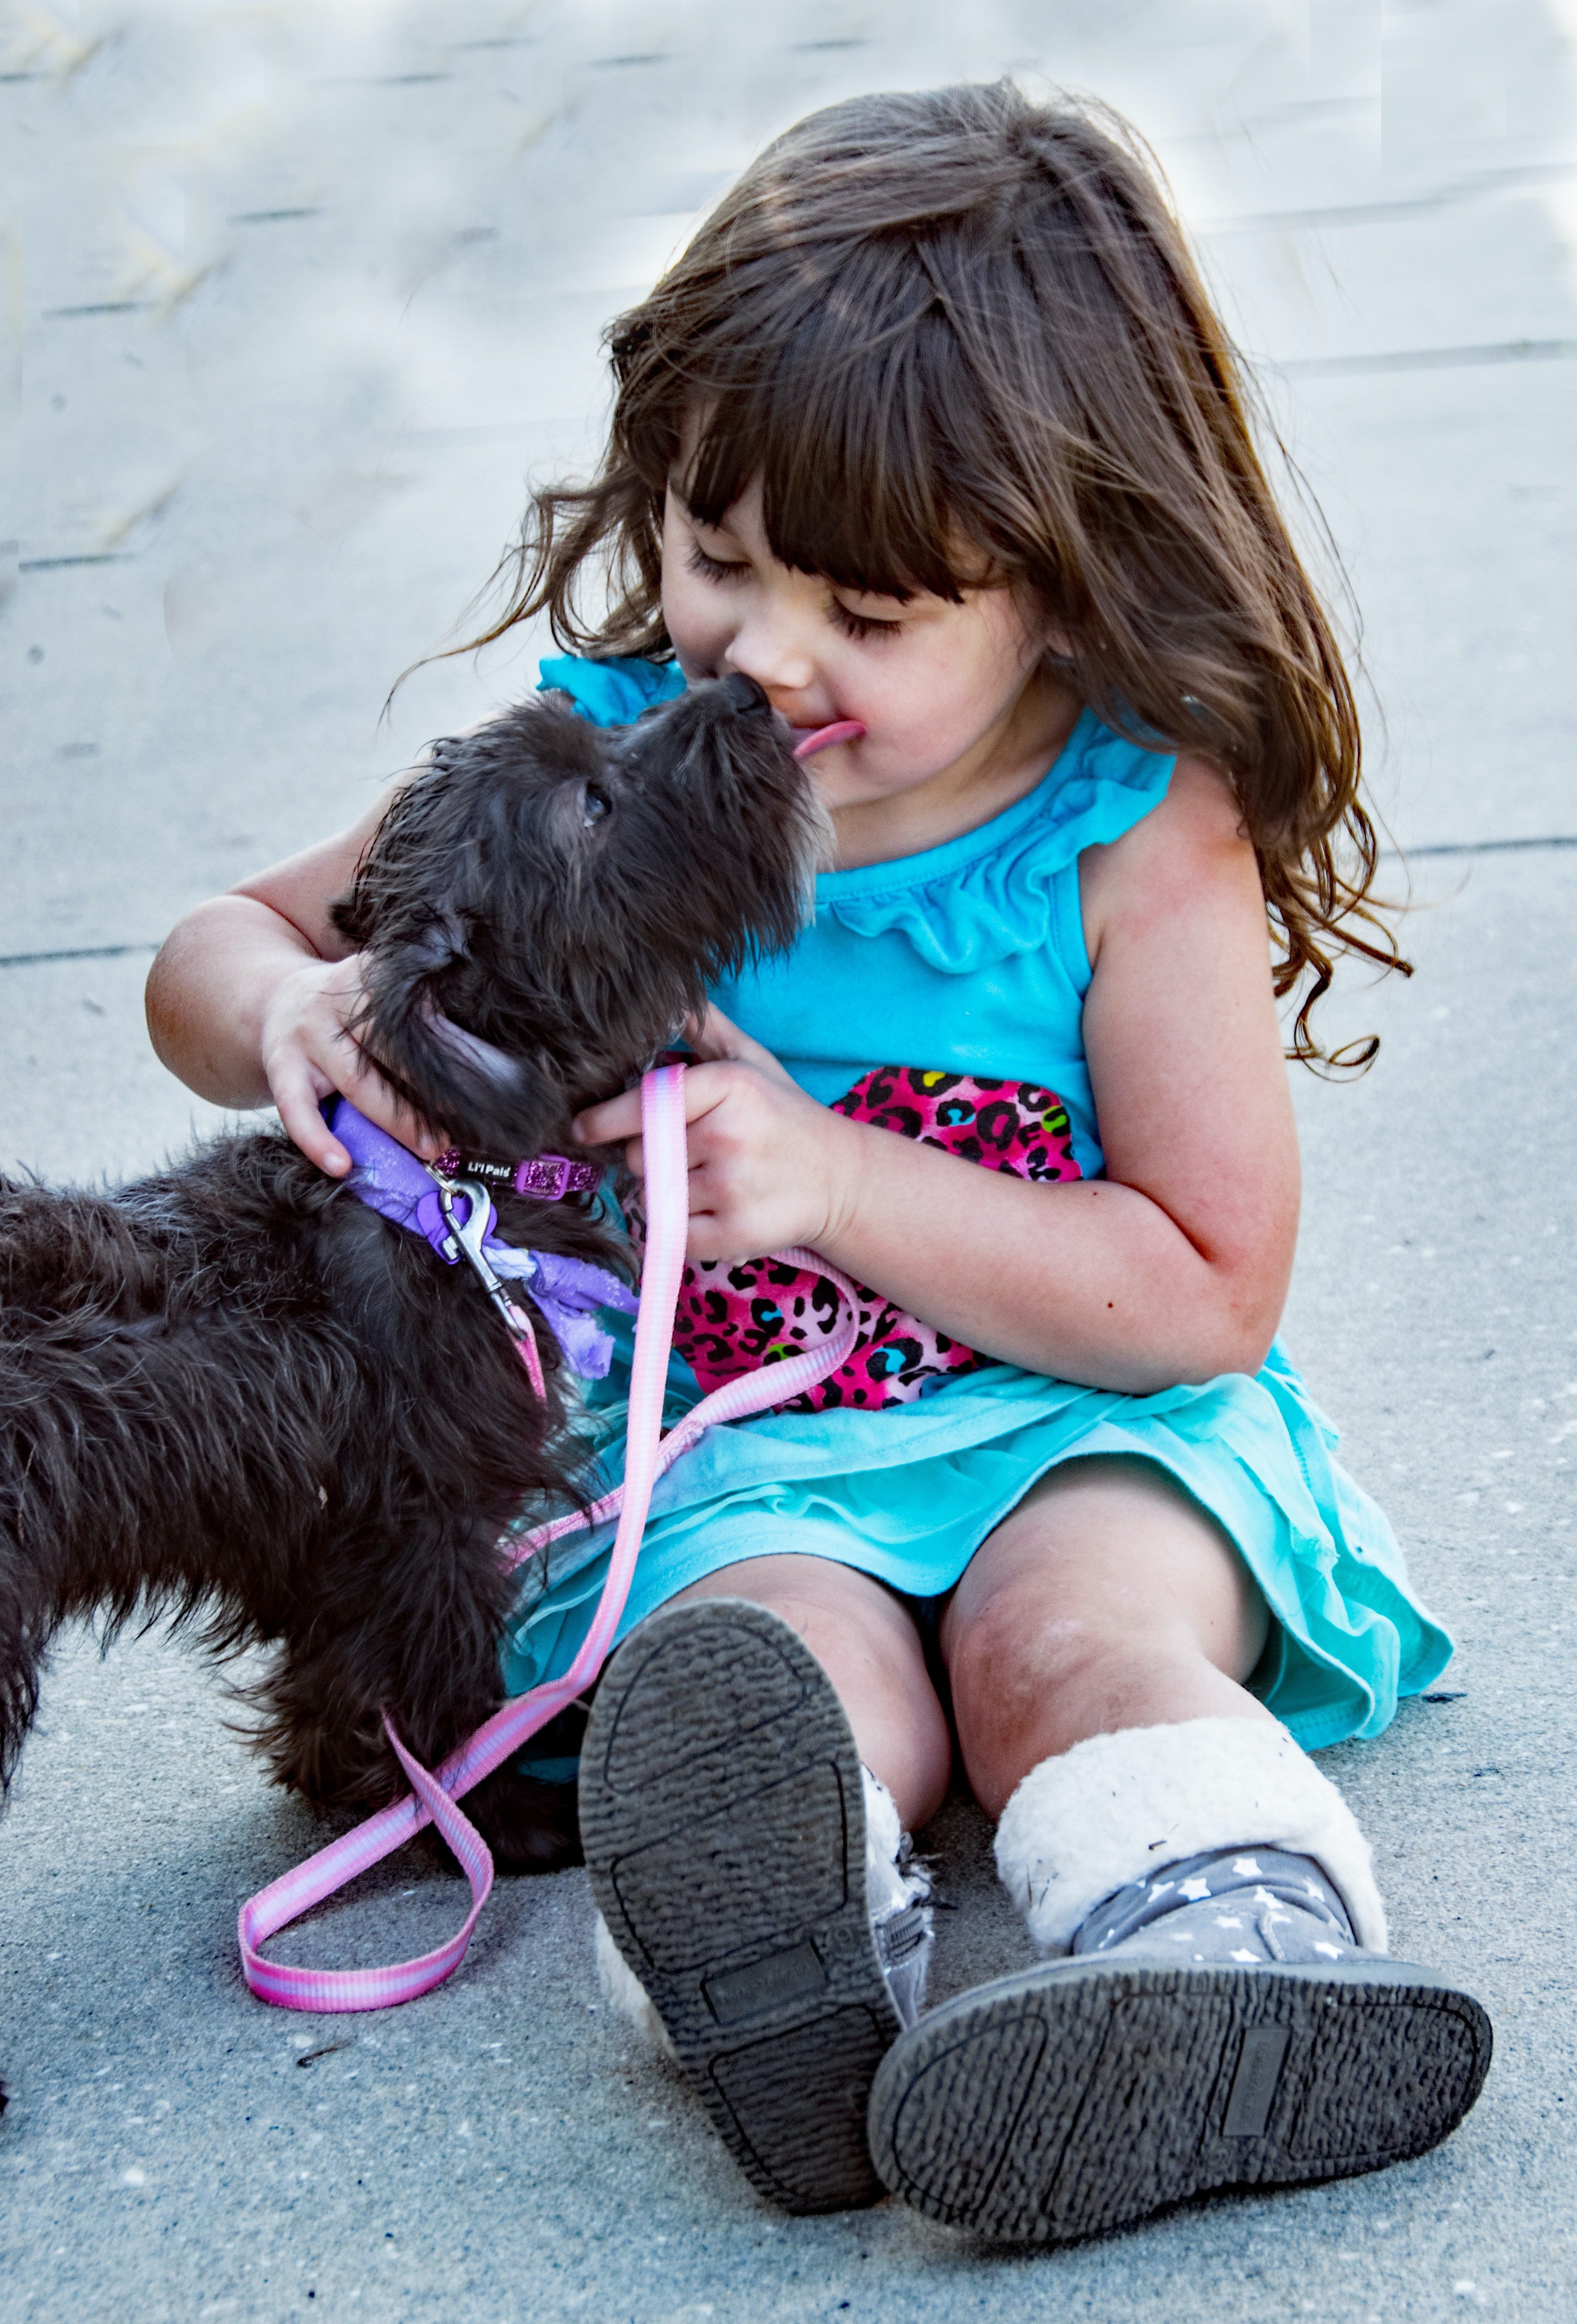 Jack zog Emily wie seine eigene Tochter auf, während er sich um seinen Hund Ralph kümmerte. | Quelle: Pexels